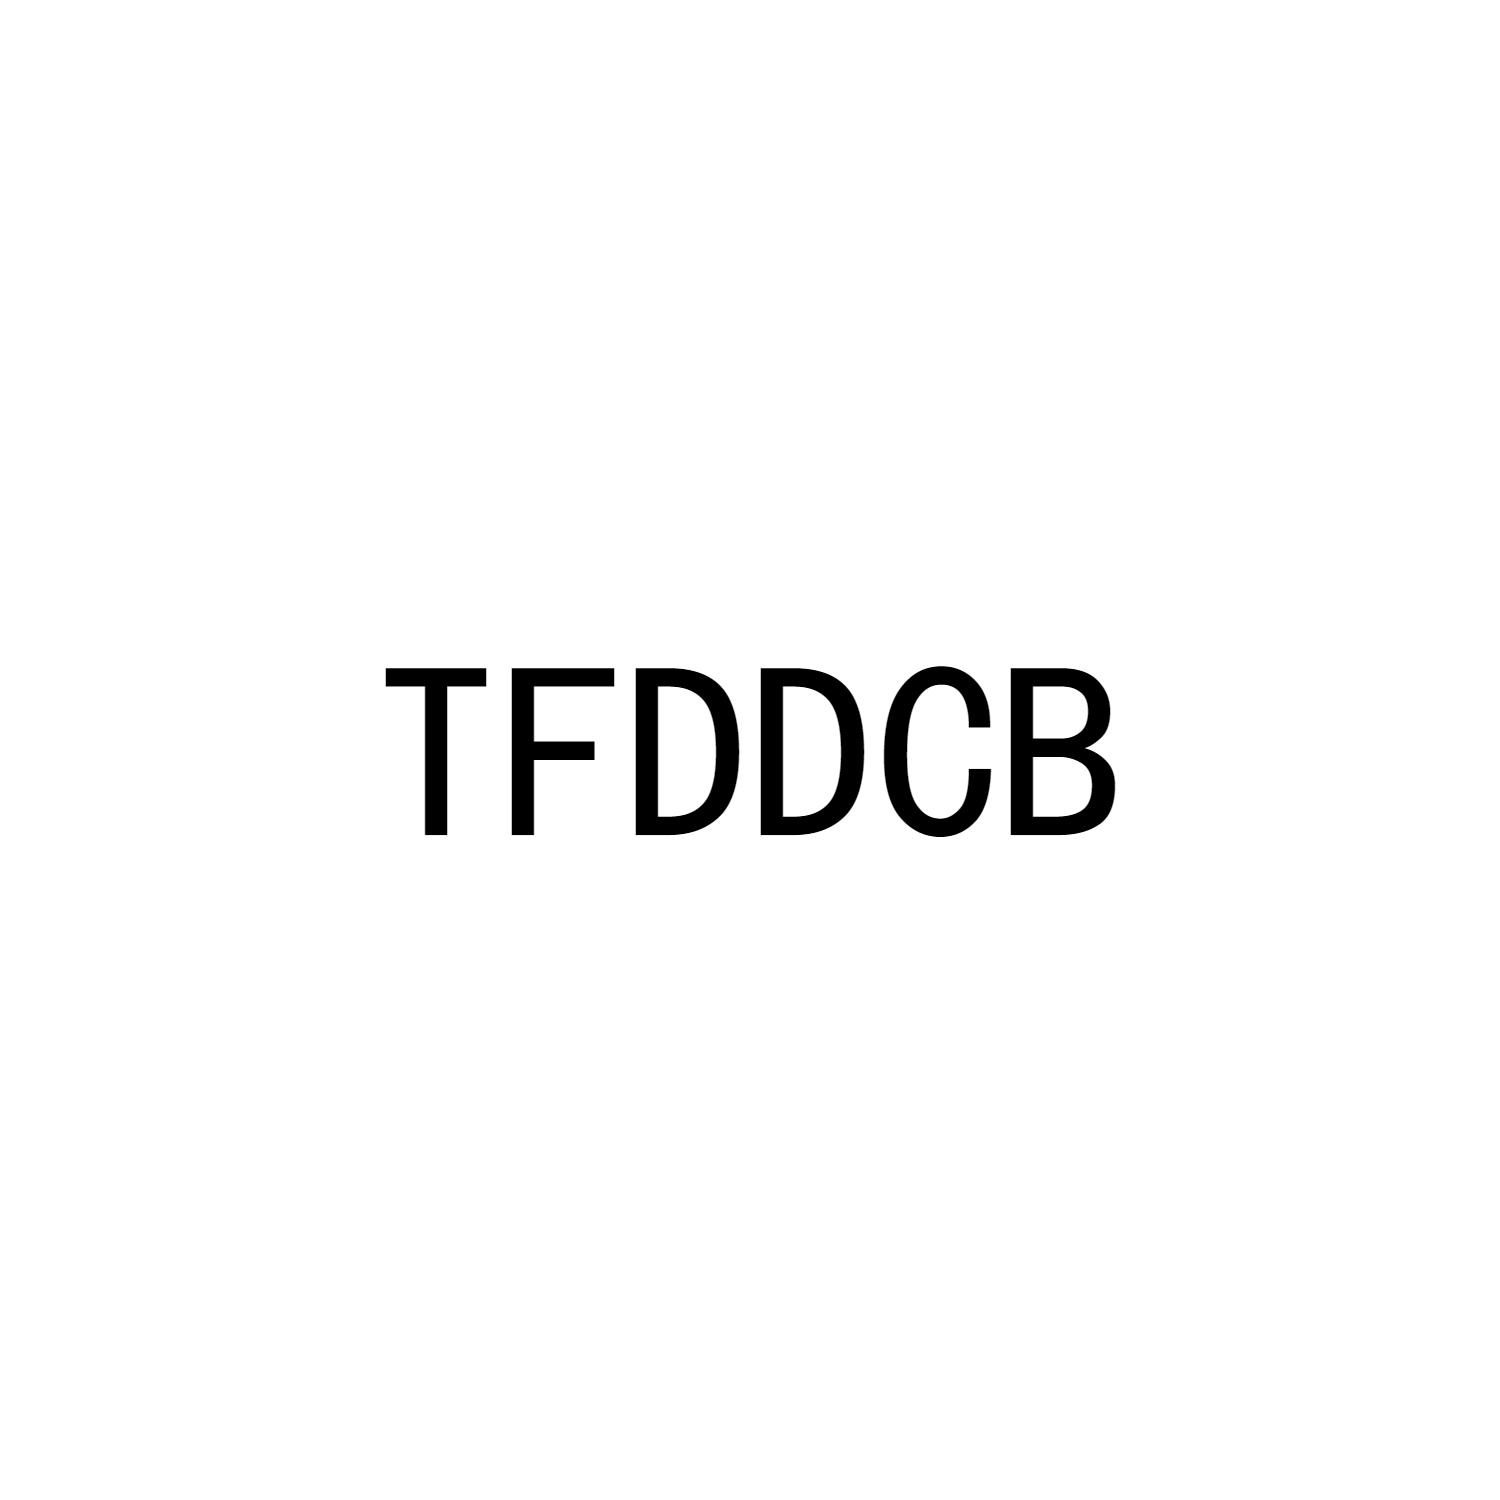 TFDDCB